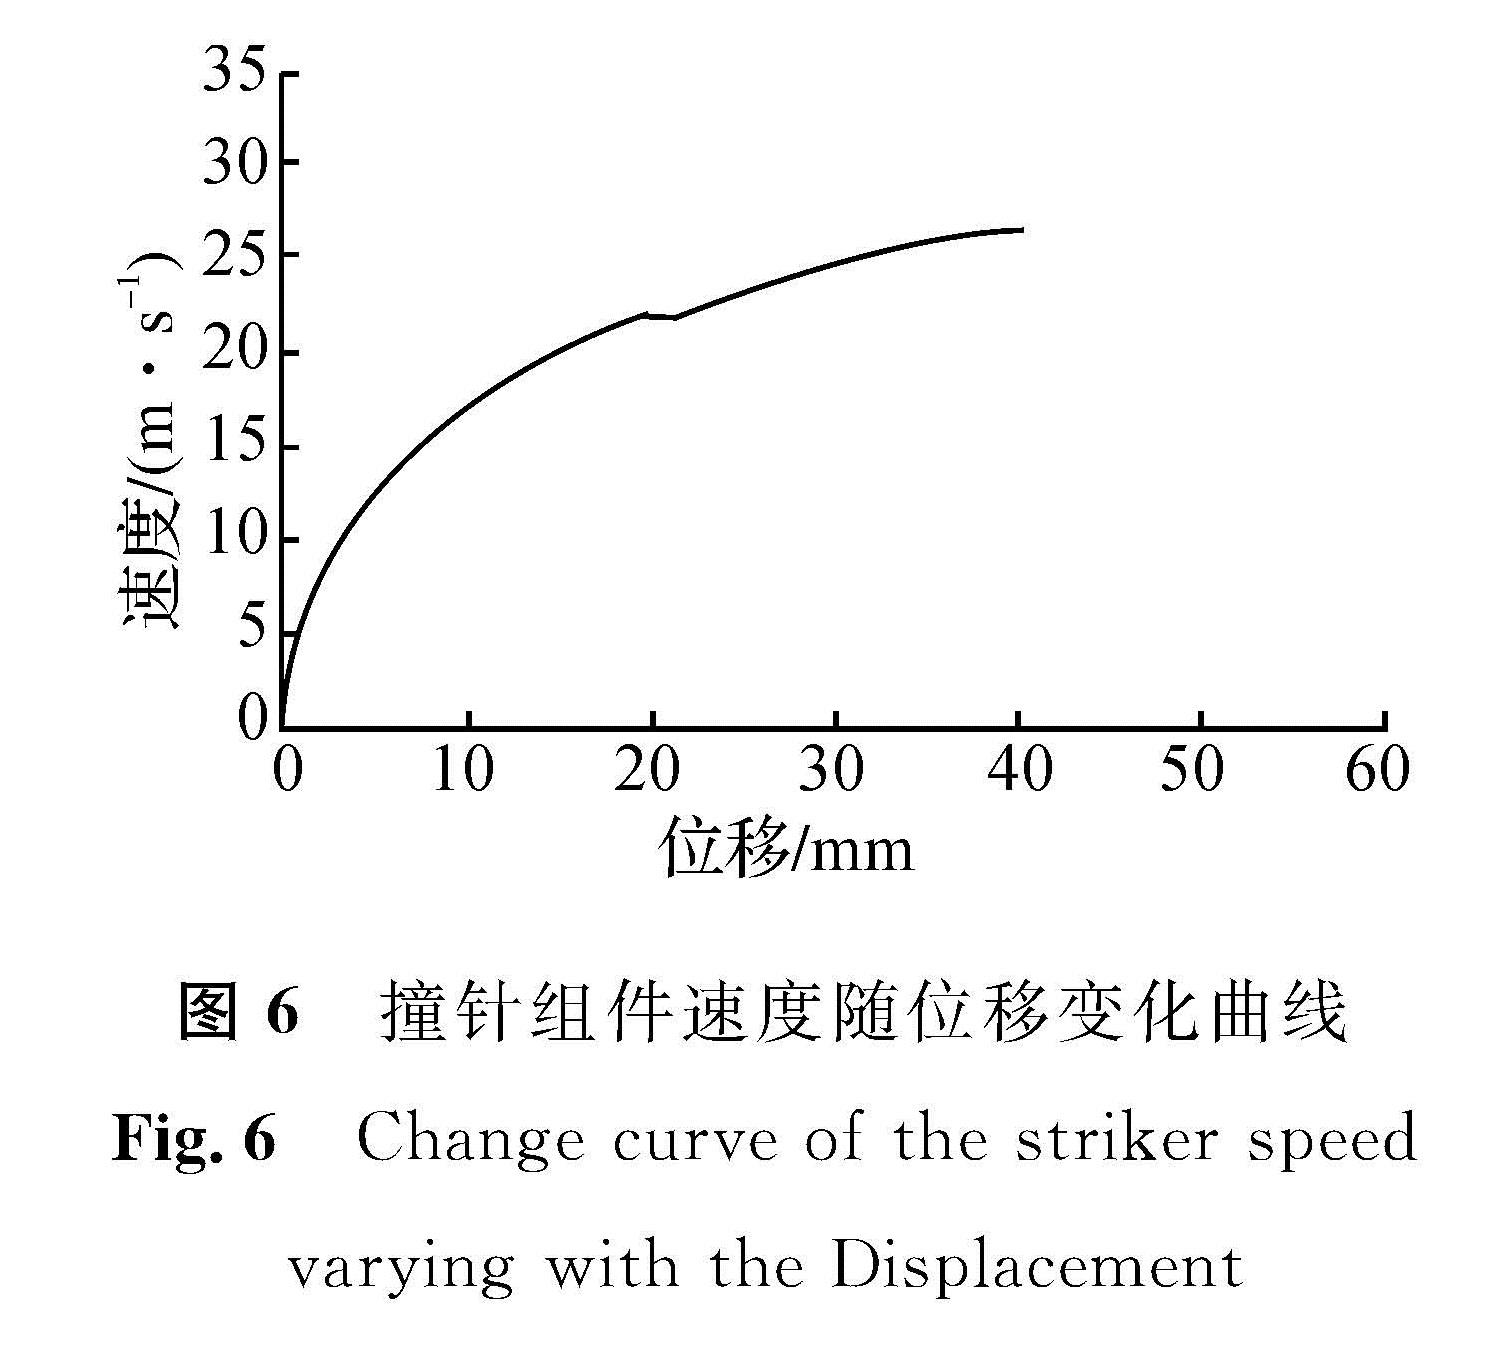 图6 撞针组件速度随位移变化曲线<br/>Fig.6 Change curve of the striker speed varying with the Displacement